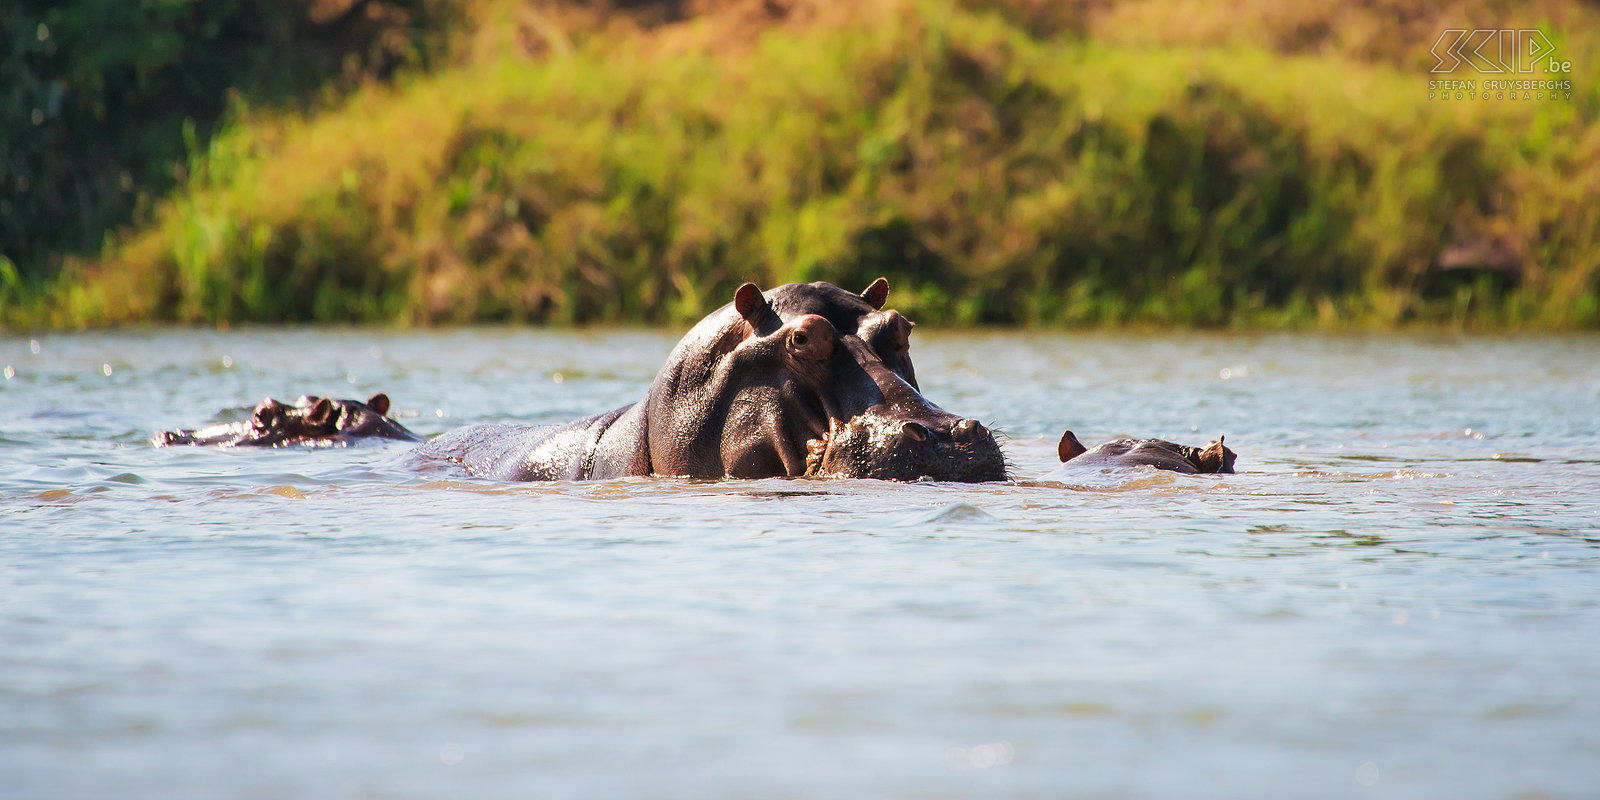 Lower Zambezi - Nijlpaard Er zijn enorm veel groepen van nijlpaarden in Zambezi rivier. Ze zijn in het water, onder water, grazen of slapen langs de oevers, knorren of gapen en  tonen dan hun enorme ivoren hoektanden waarmee ze gemakkelijk een kano in 2 kunnen bijten. Nijlpaarden vallen zeker niet aan voor voedsel maar ze zijn zeer territoriaal in het water dus je moet ze altijd veel ruimte geven. Andere gevaren waren krokodillen, verdronken boomstammen, verborgen zandbanken, wind en sterke stromingen.  Stefan Cruysberghs